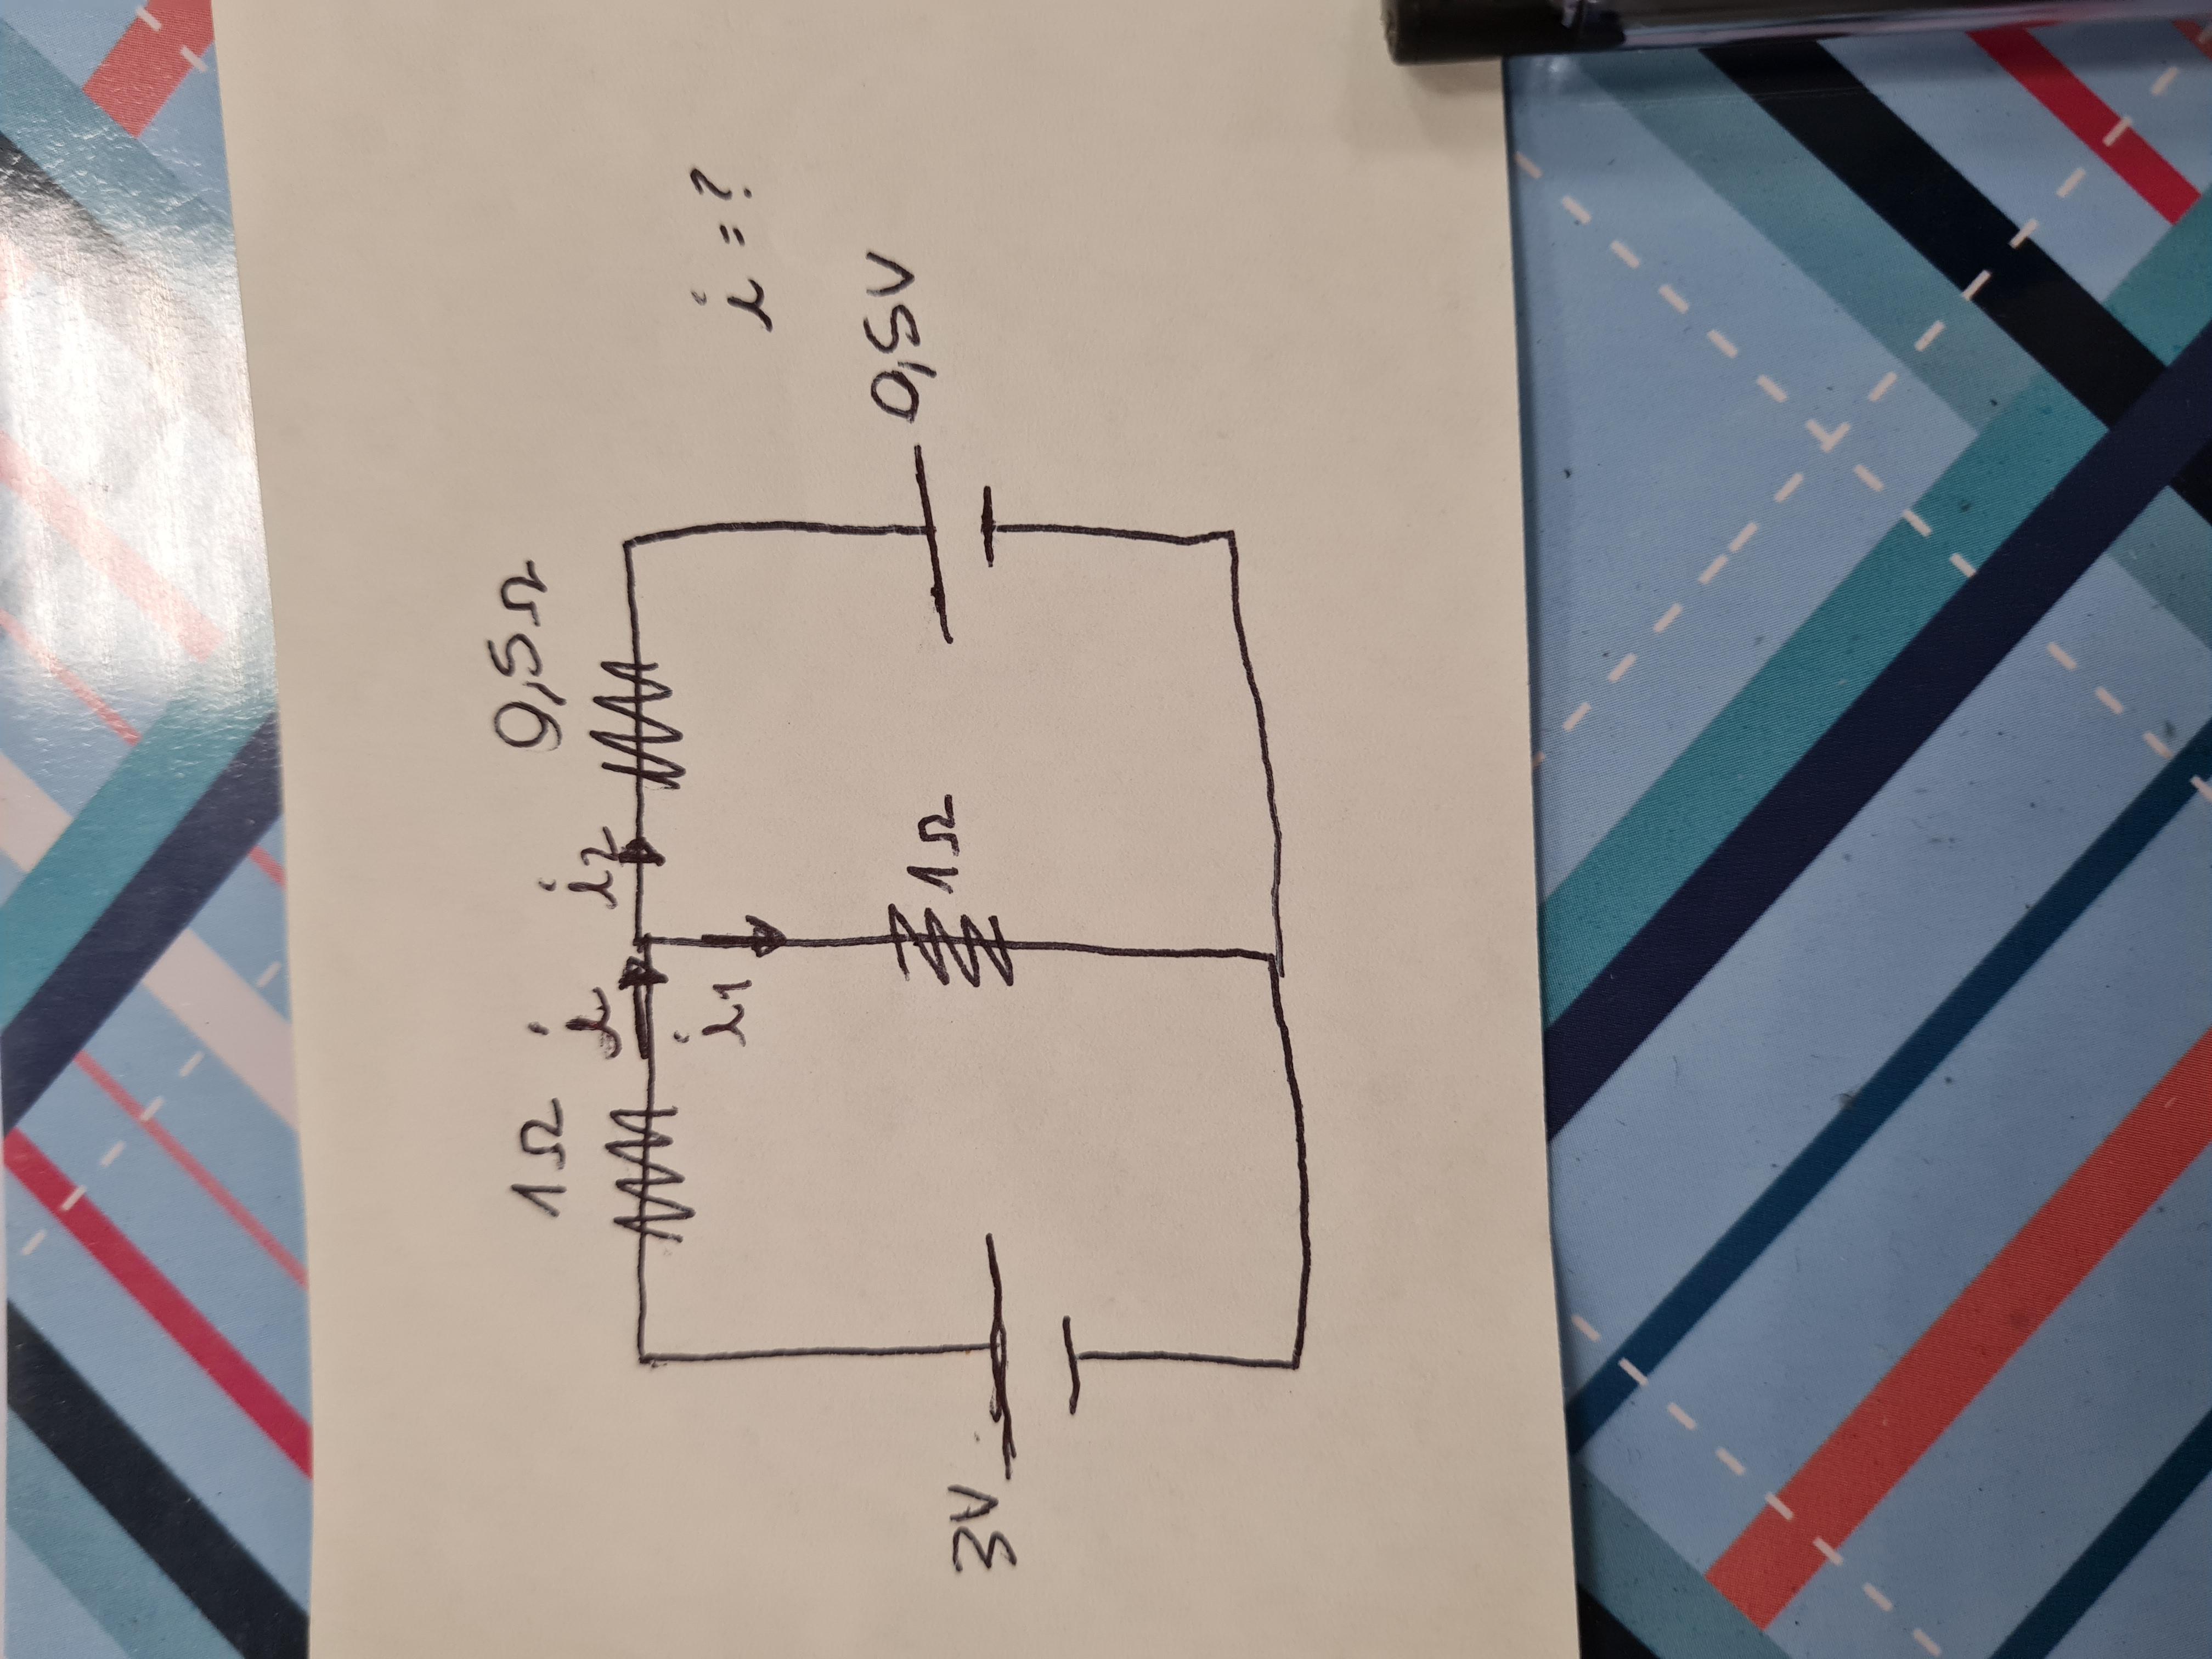 Qual é o valor da corrente i no circuito elétrico abaixo?